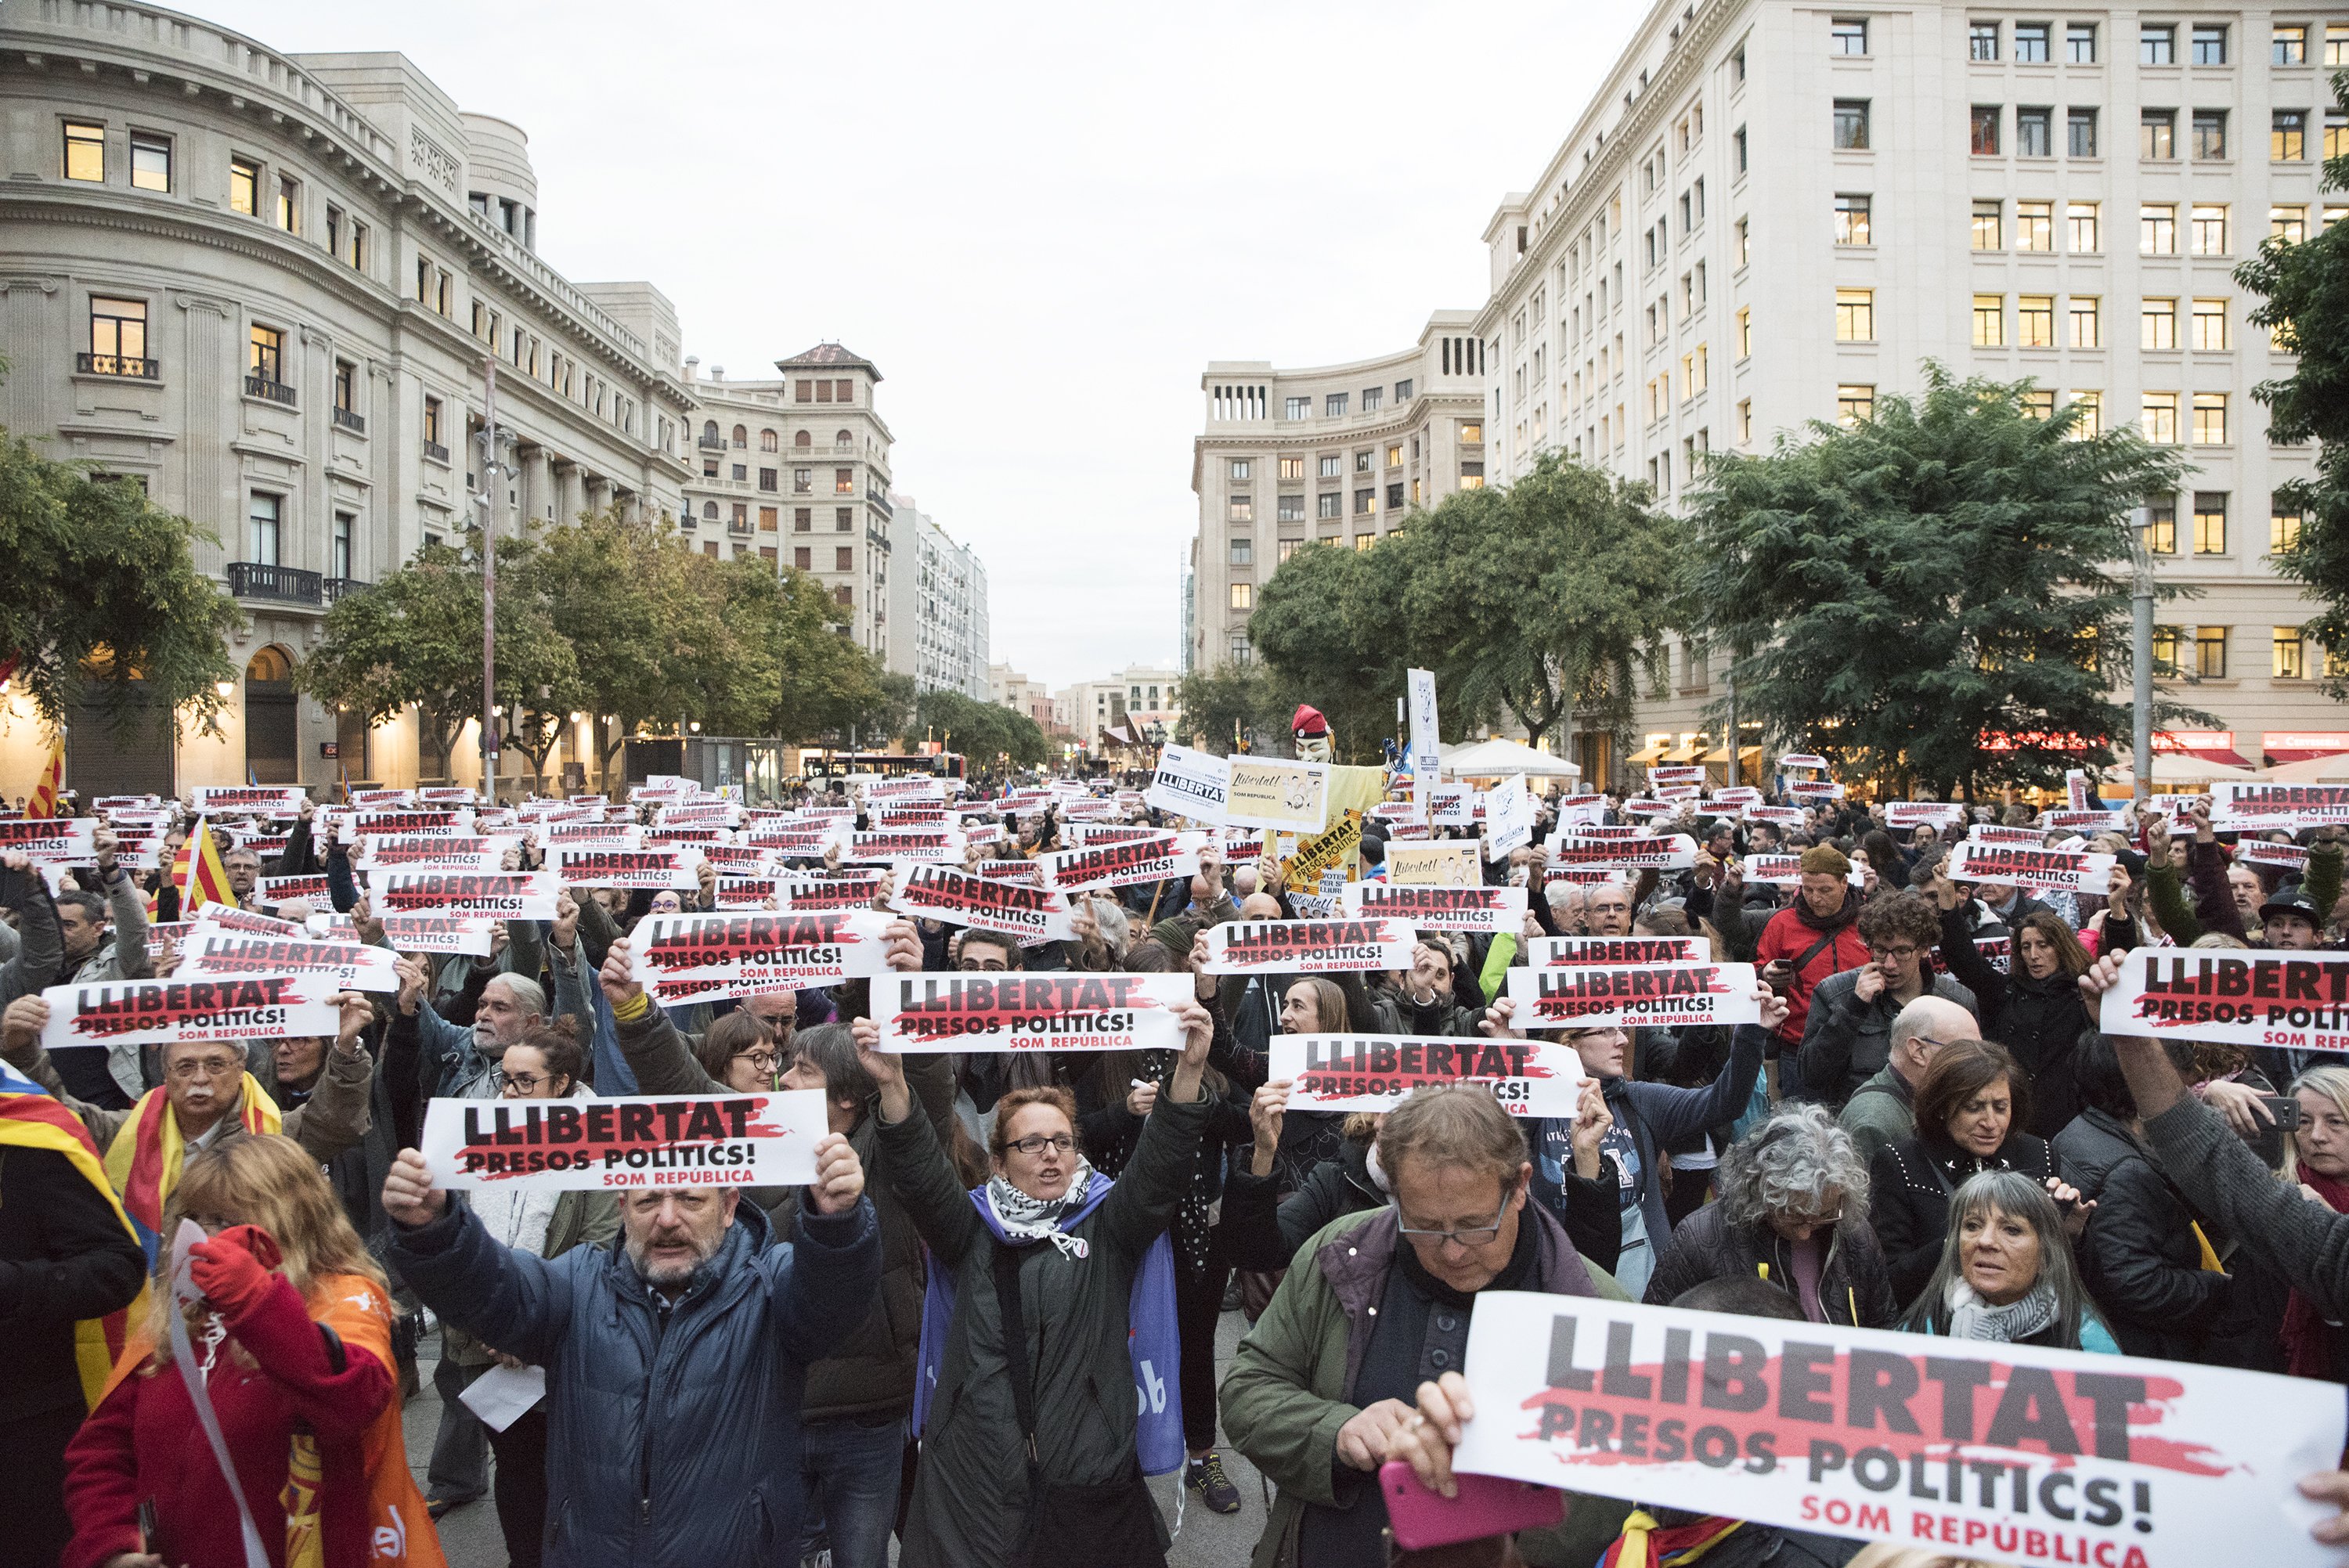 Call for release of political prisoners in Barcelona's plaça de la Catedral